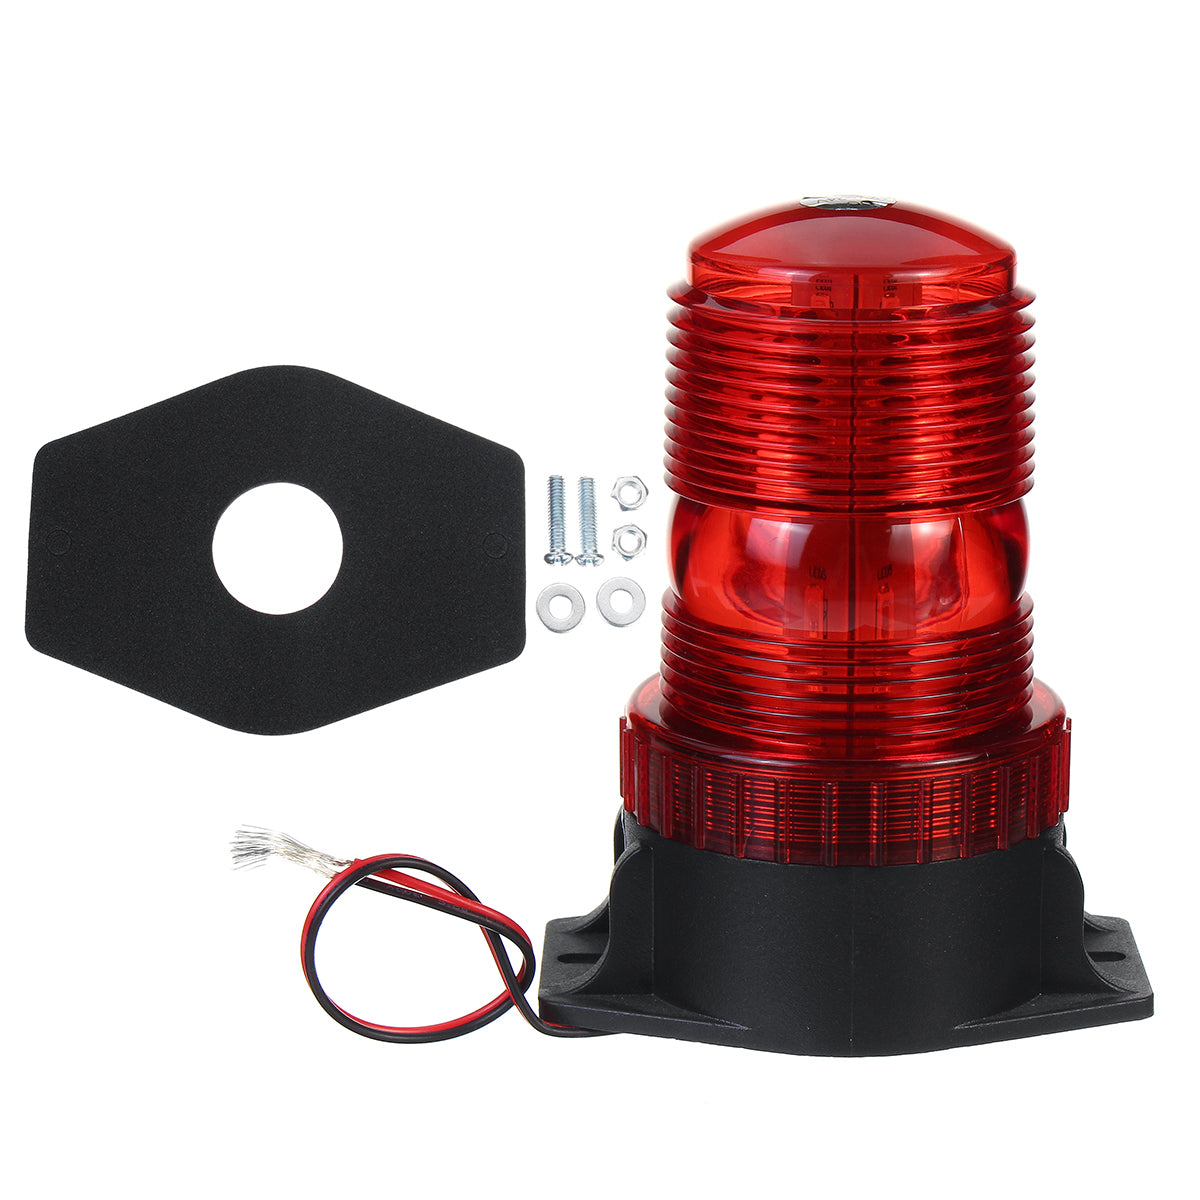 Firebrick 12-24V 30 LED Roof Rotating Beacon Strobe Tractor Warning Light Lamp